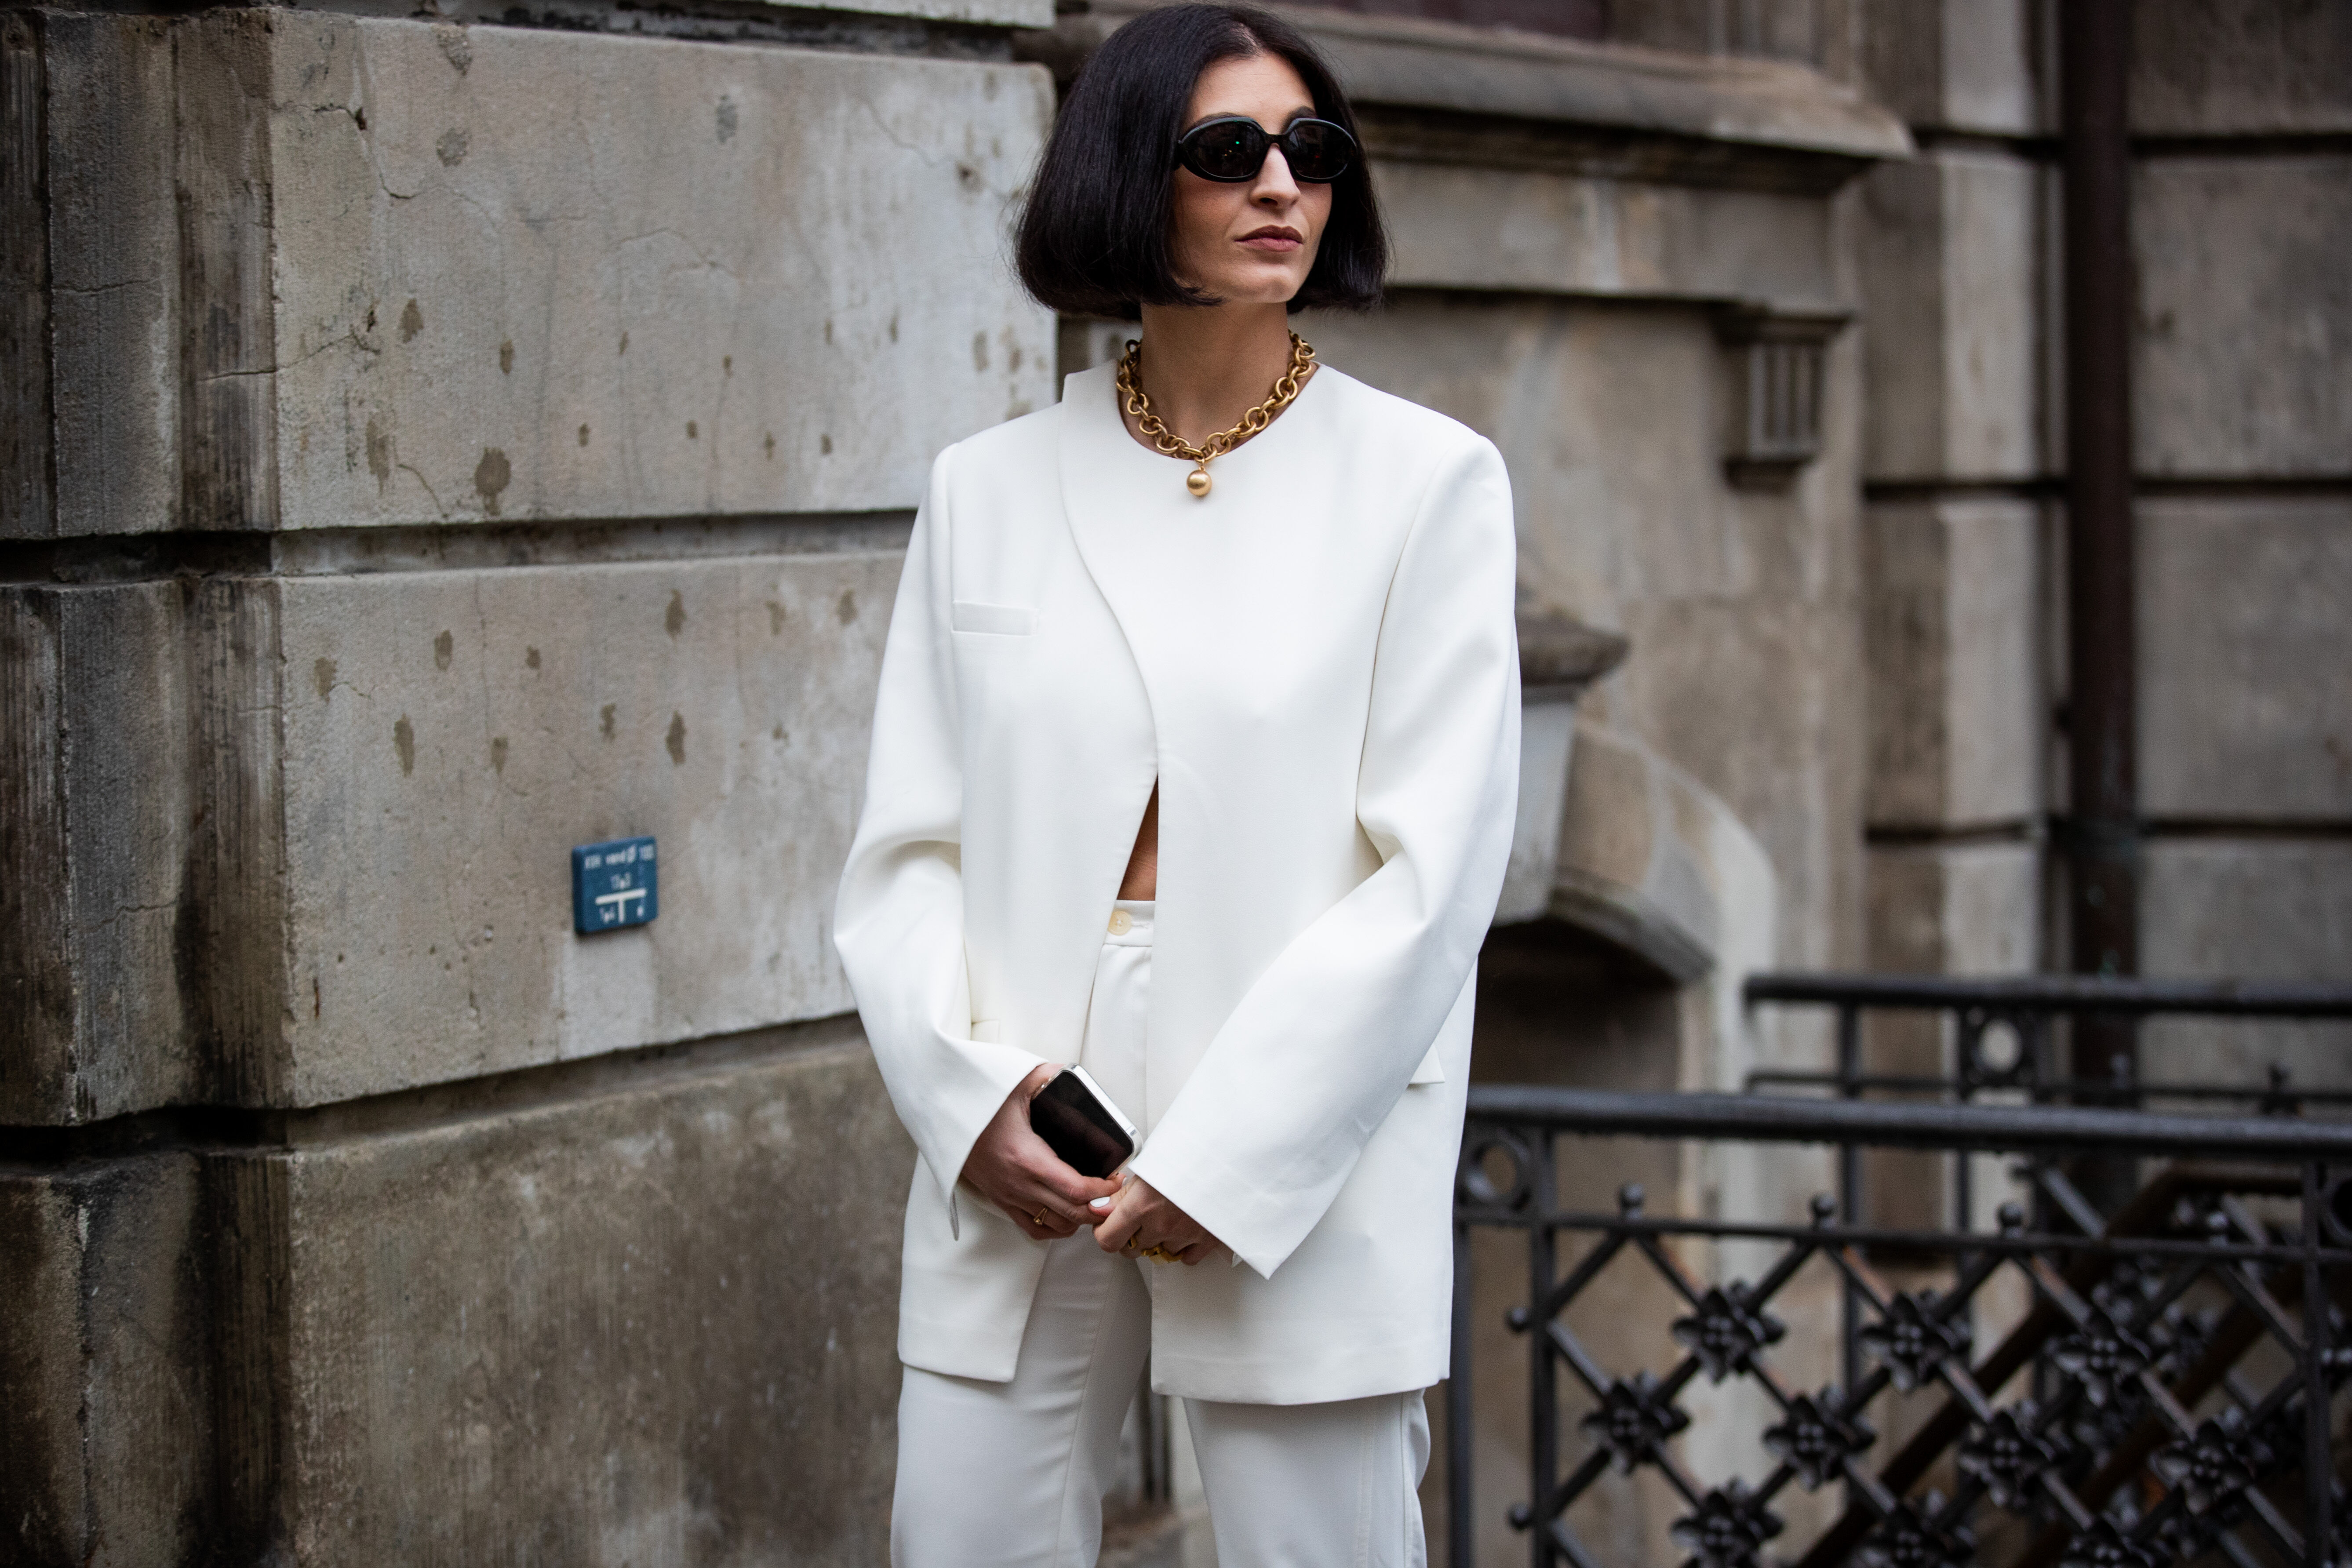 Persoonlijk Kameel ritme Witte kleding écht wit houden? Met deze 3 tips lukt het je! - Trendalert